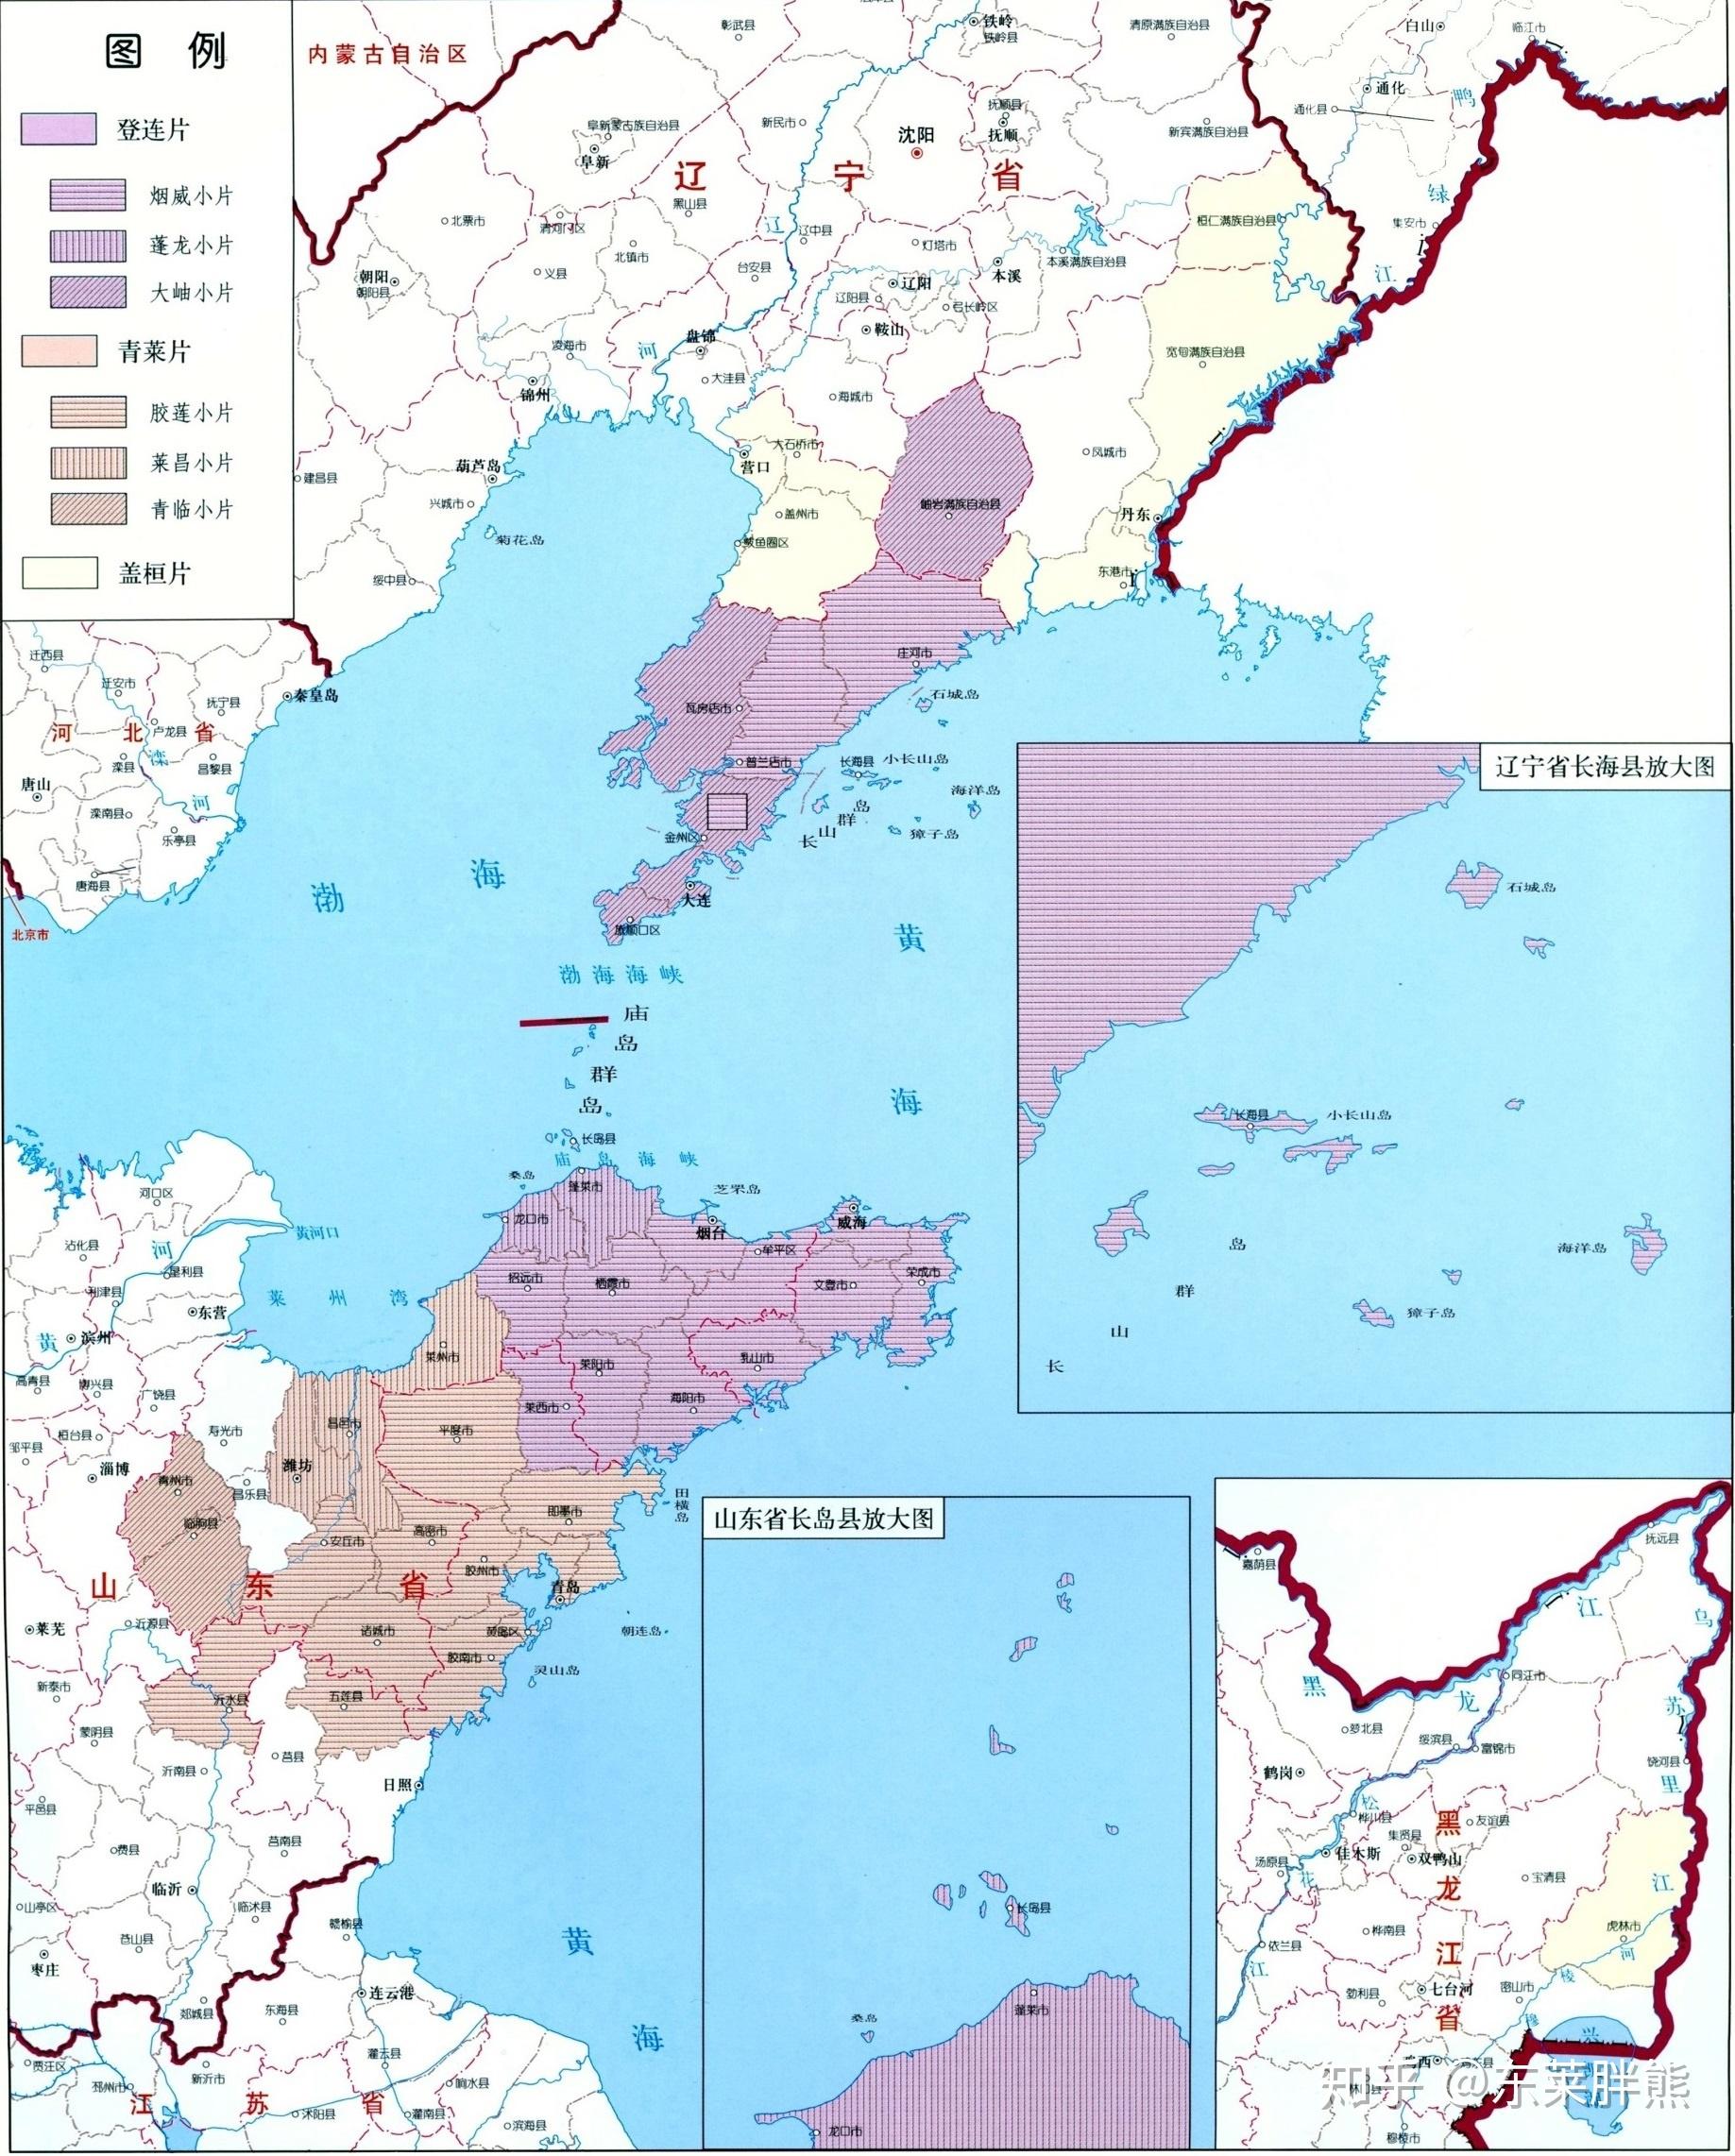 科学网—东海和南海北部盆地群演化与日本大陆形成过程 - 梁光河的博文